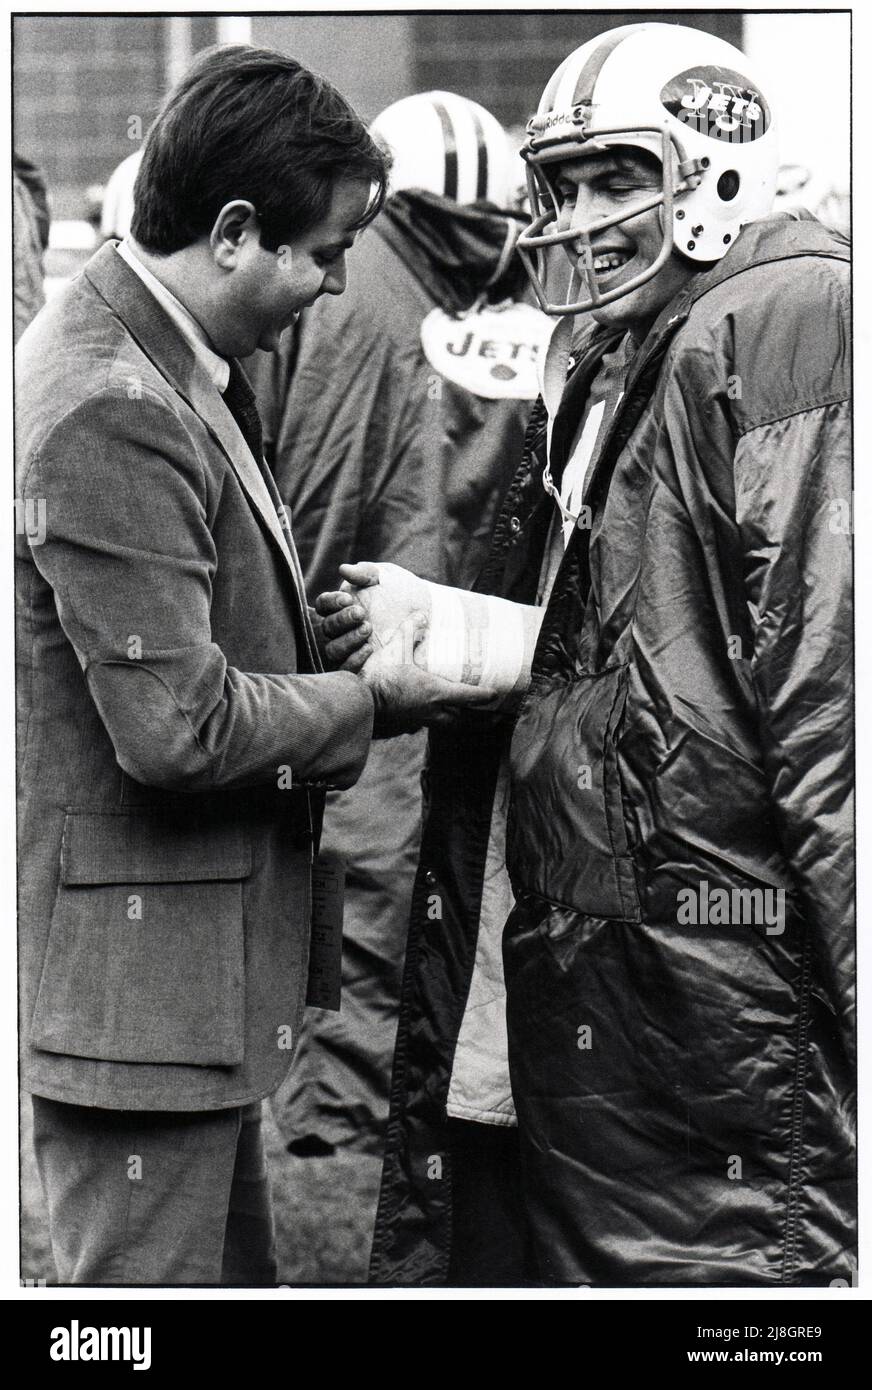 L'ortopedista dei New York Jets, il dottor Robert Grossman, controlla il polso del running back Lou Giammona ai margini di una partita del 1976 allo Shea Stadium di New York City. Grossman faceva parte dello staff dell'Institute of Sports Medicine and Athletic Trauma, Foto Stock